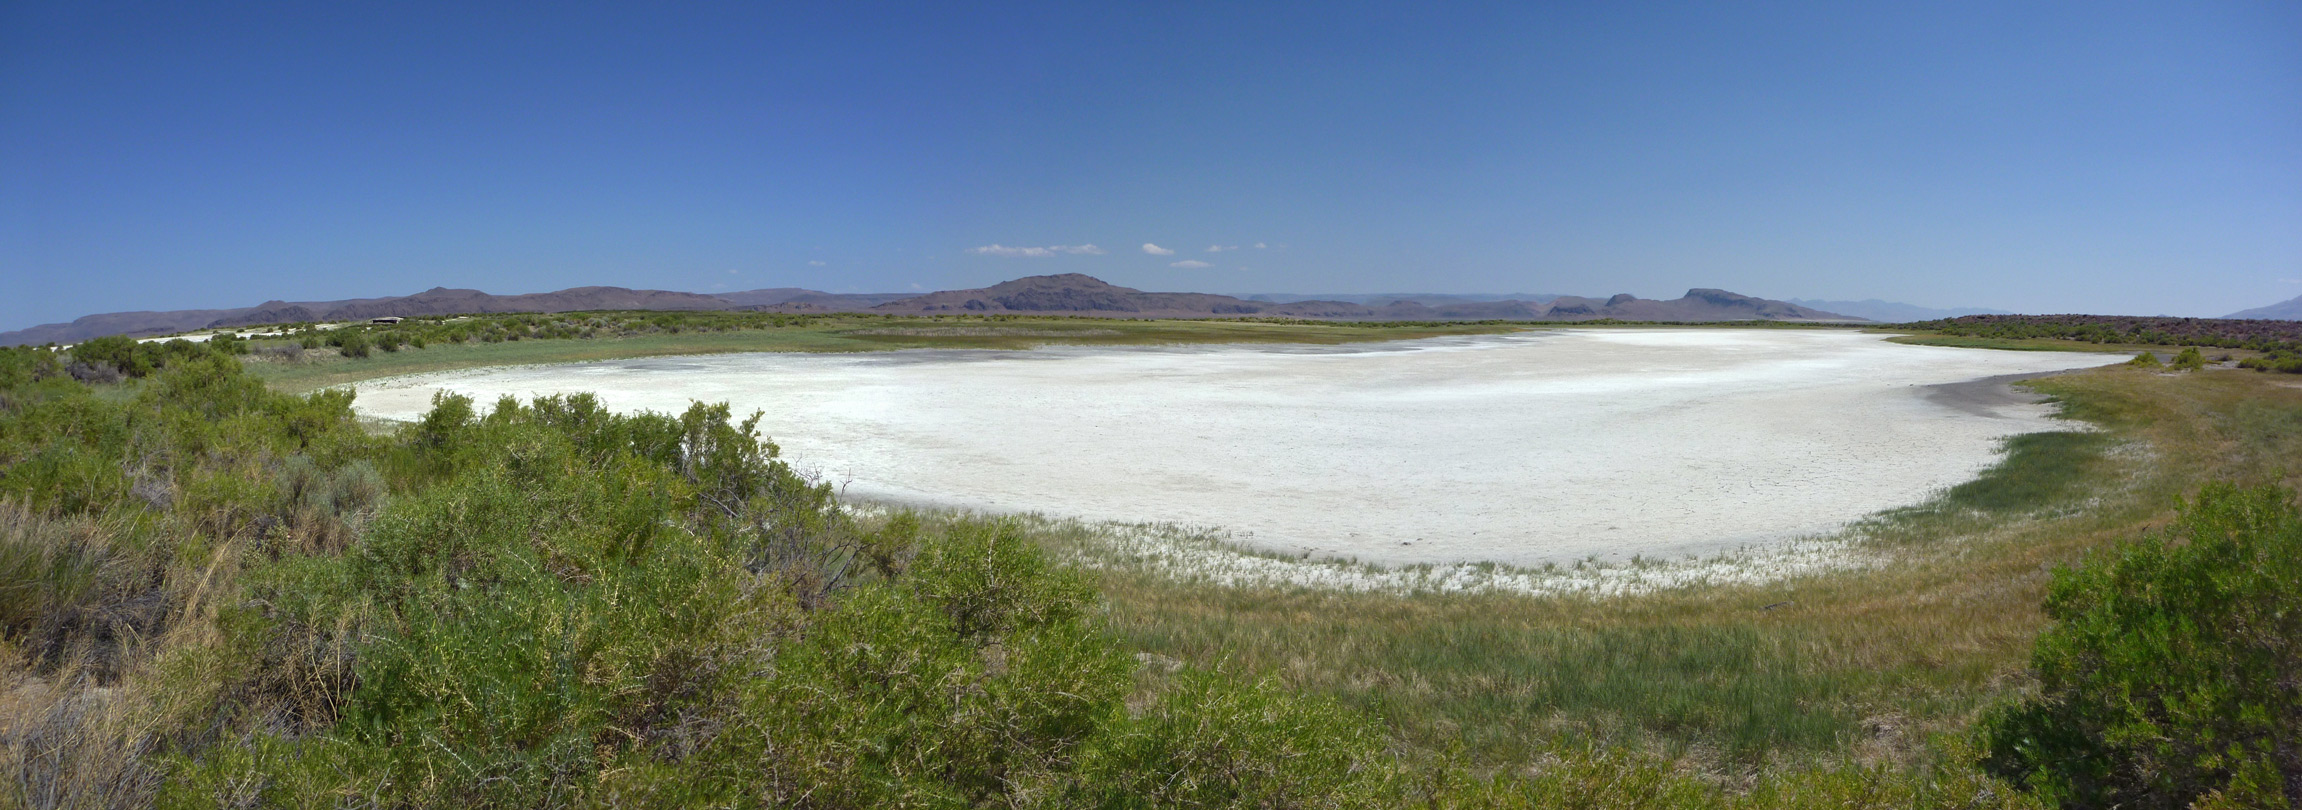 Salt pan near Borax Lake